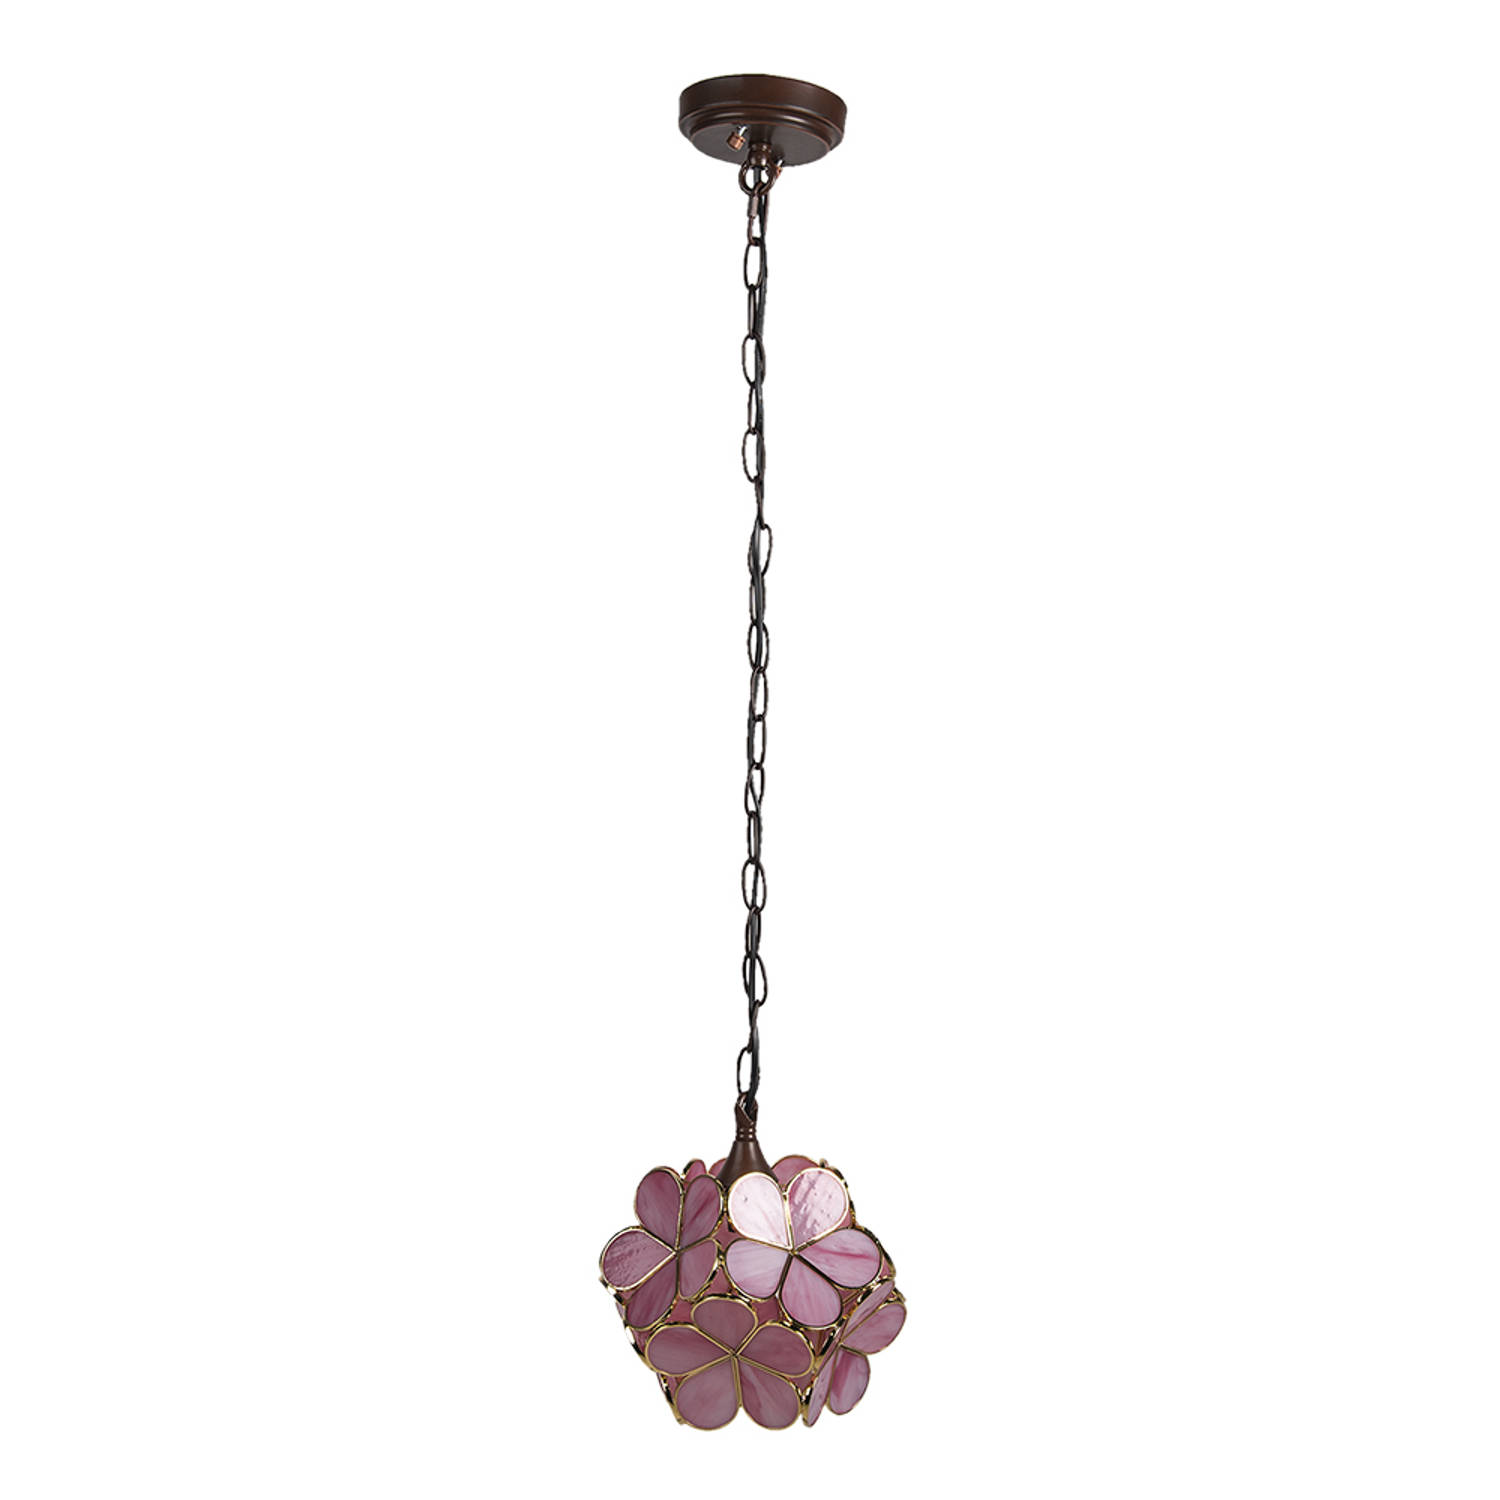 HAES DECO - Tiffany Hanglamp 21x21x17/90 cm Roze Geel Glas Bloemen Hanglamp Eettafel Hanglampen Eetkamer Glas in Lood